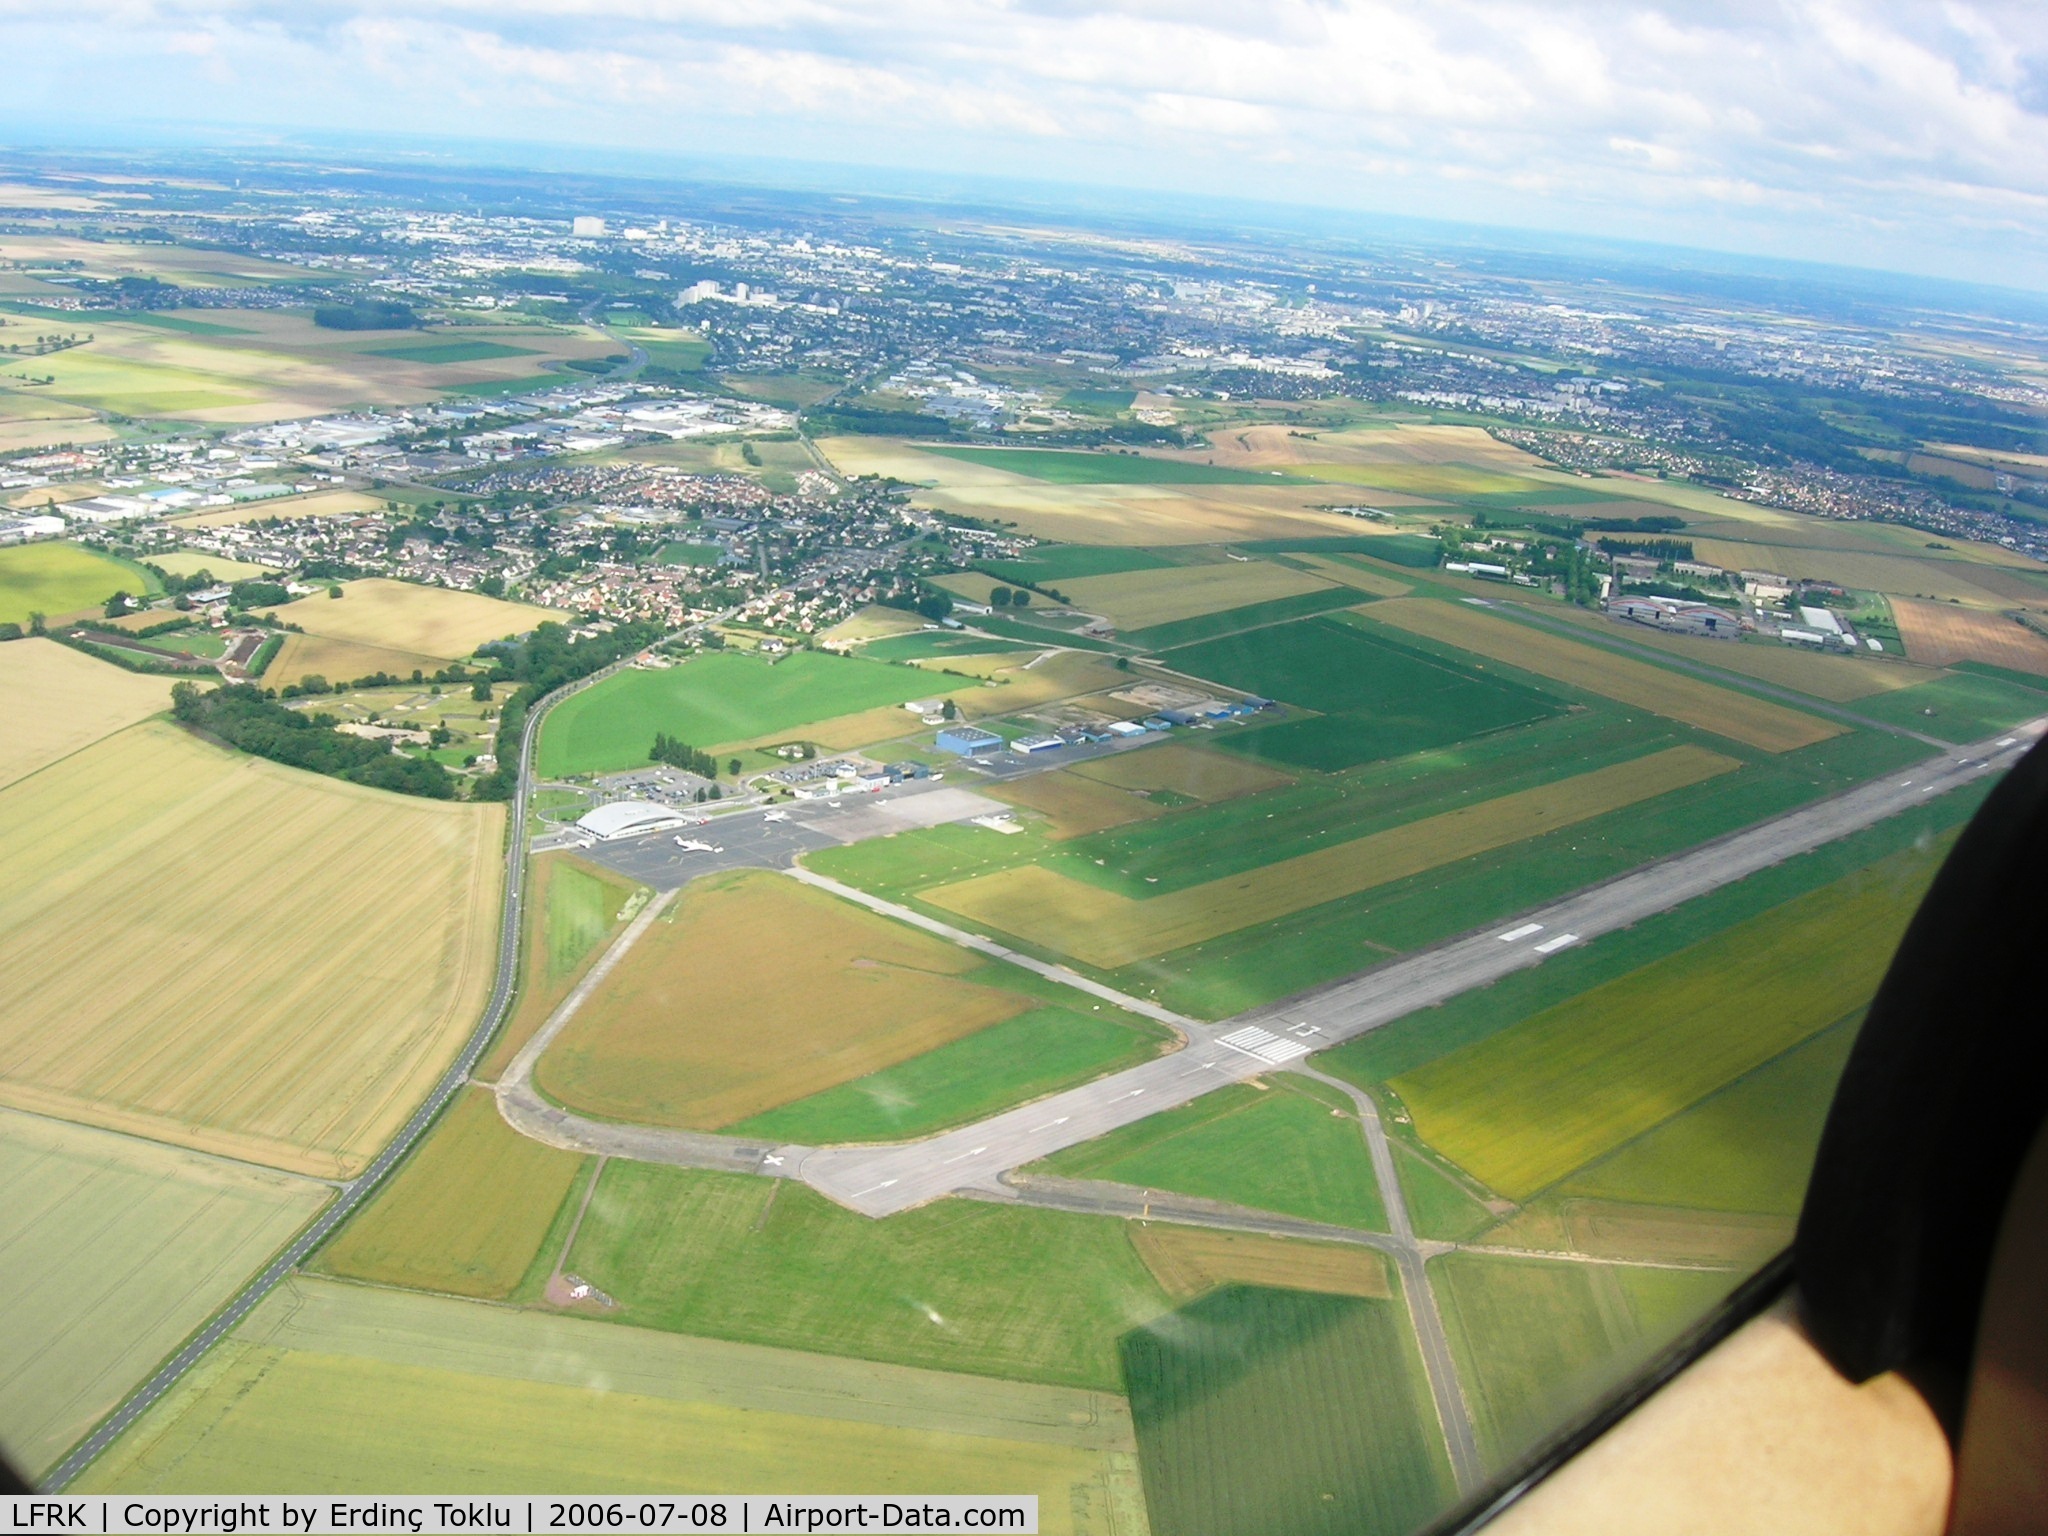 Caen Carpiquet Airport, Caen France (LFRK) - Caen.